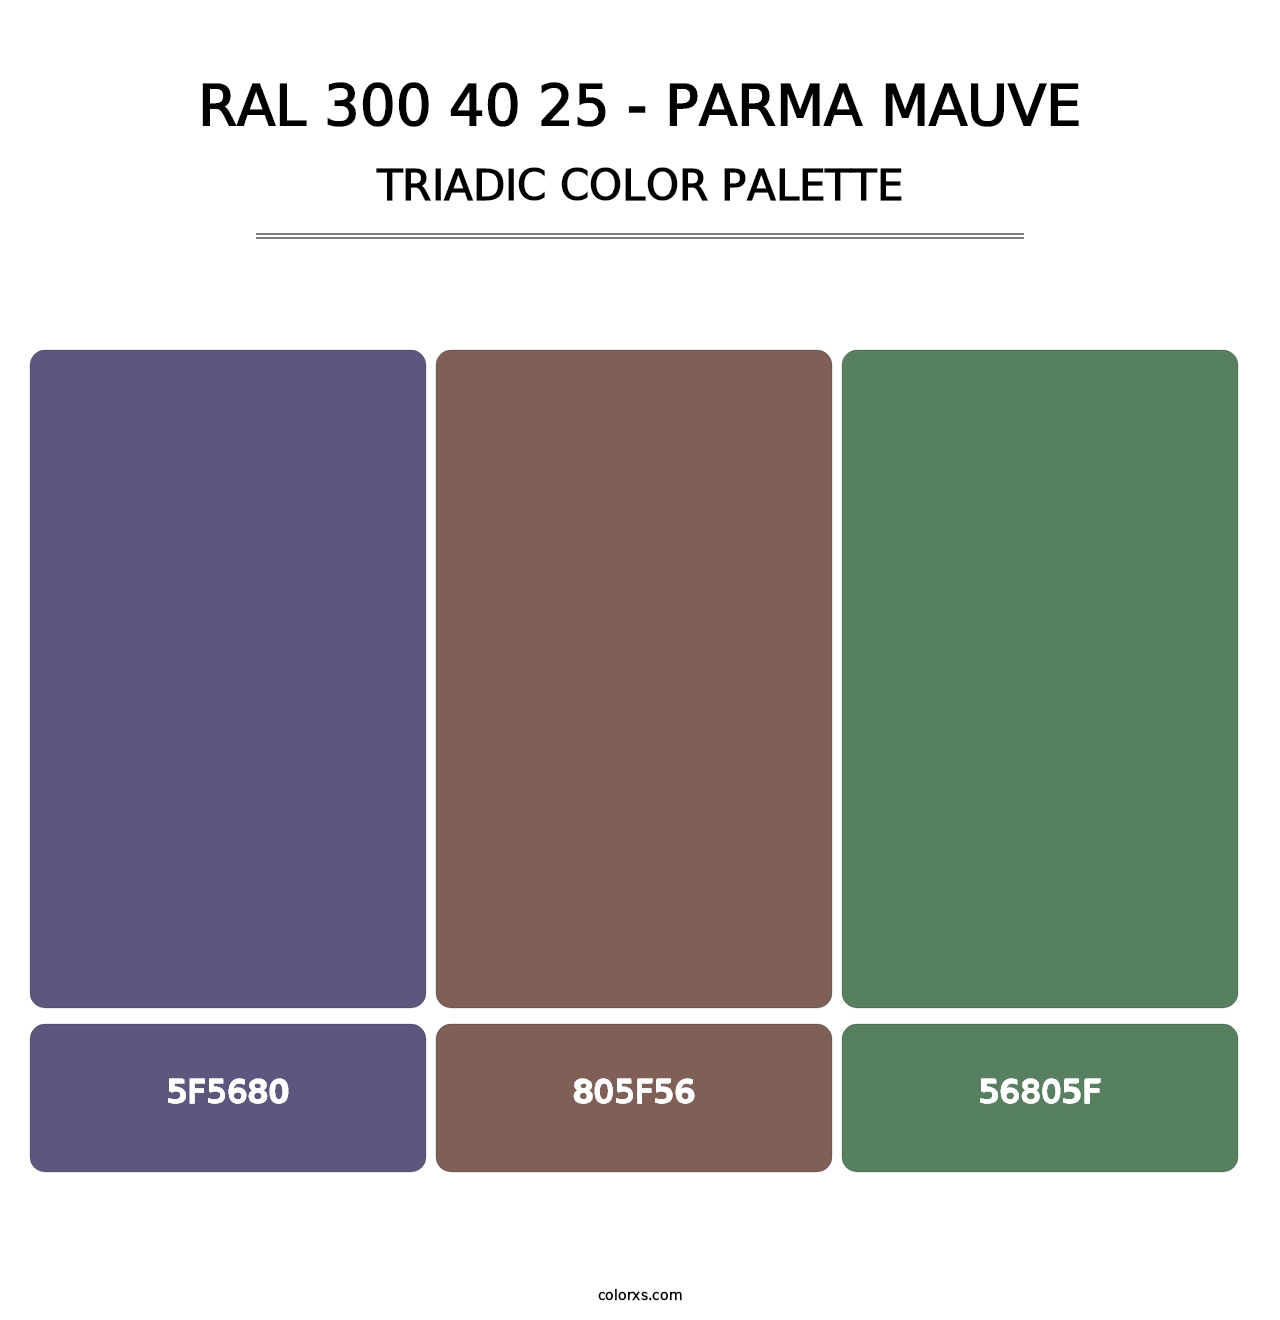 RAL 300 40 25 - Parma Mauve - Triadic Color Palette